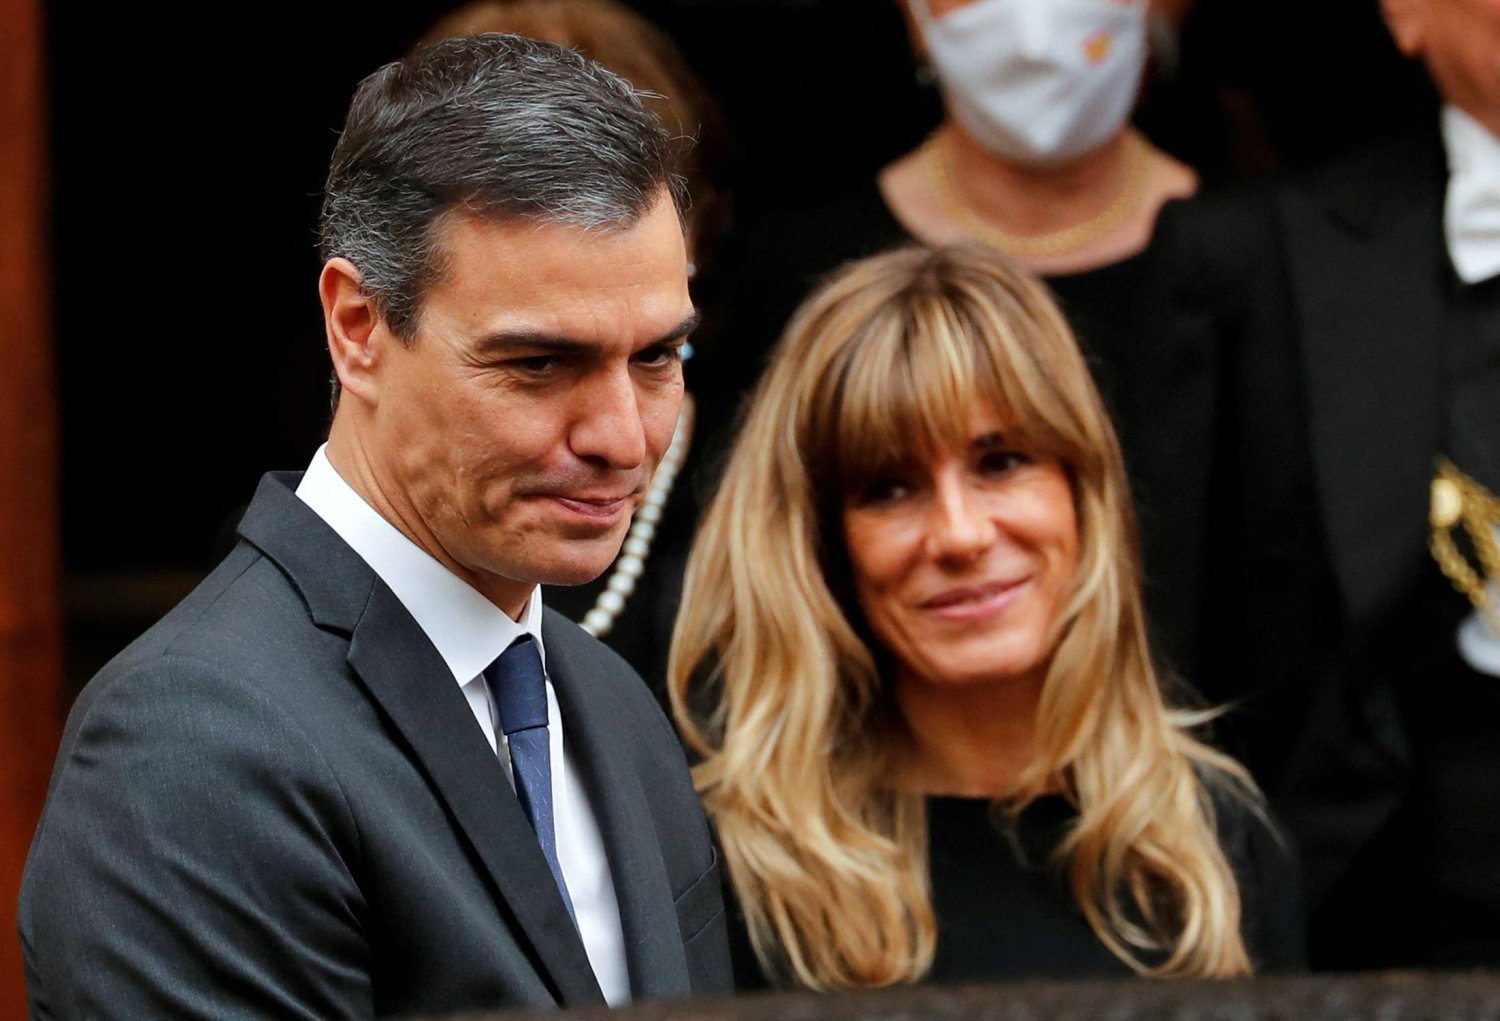 بسبب زوجته .. رئيس وزراء اسبانيا يفكر في الاستقالة